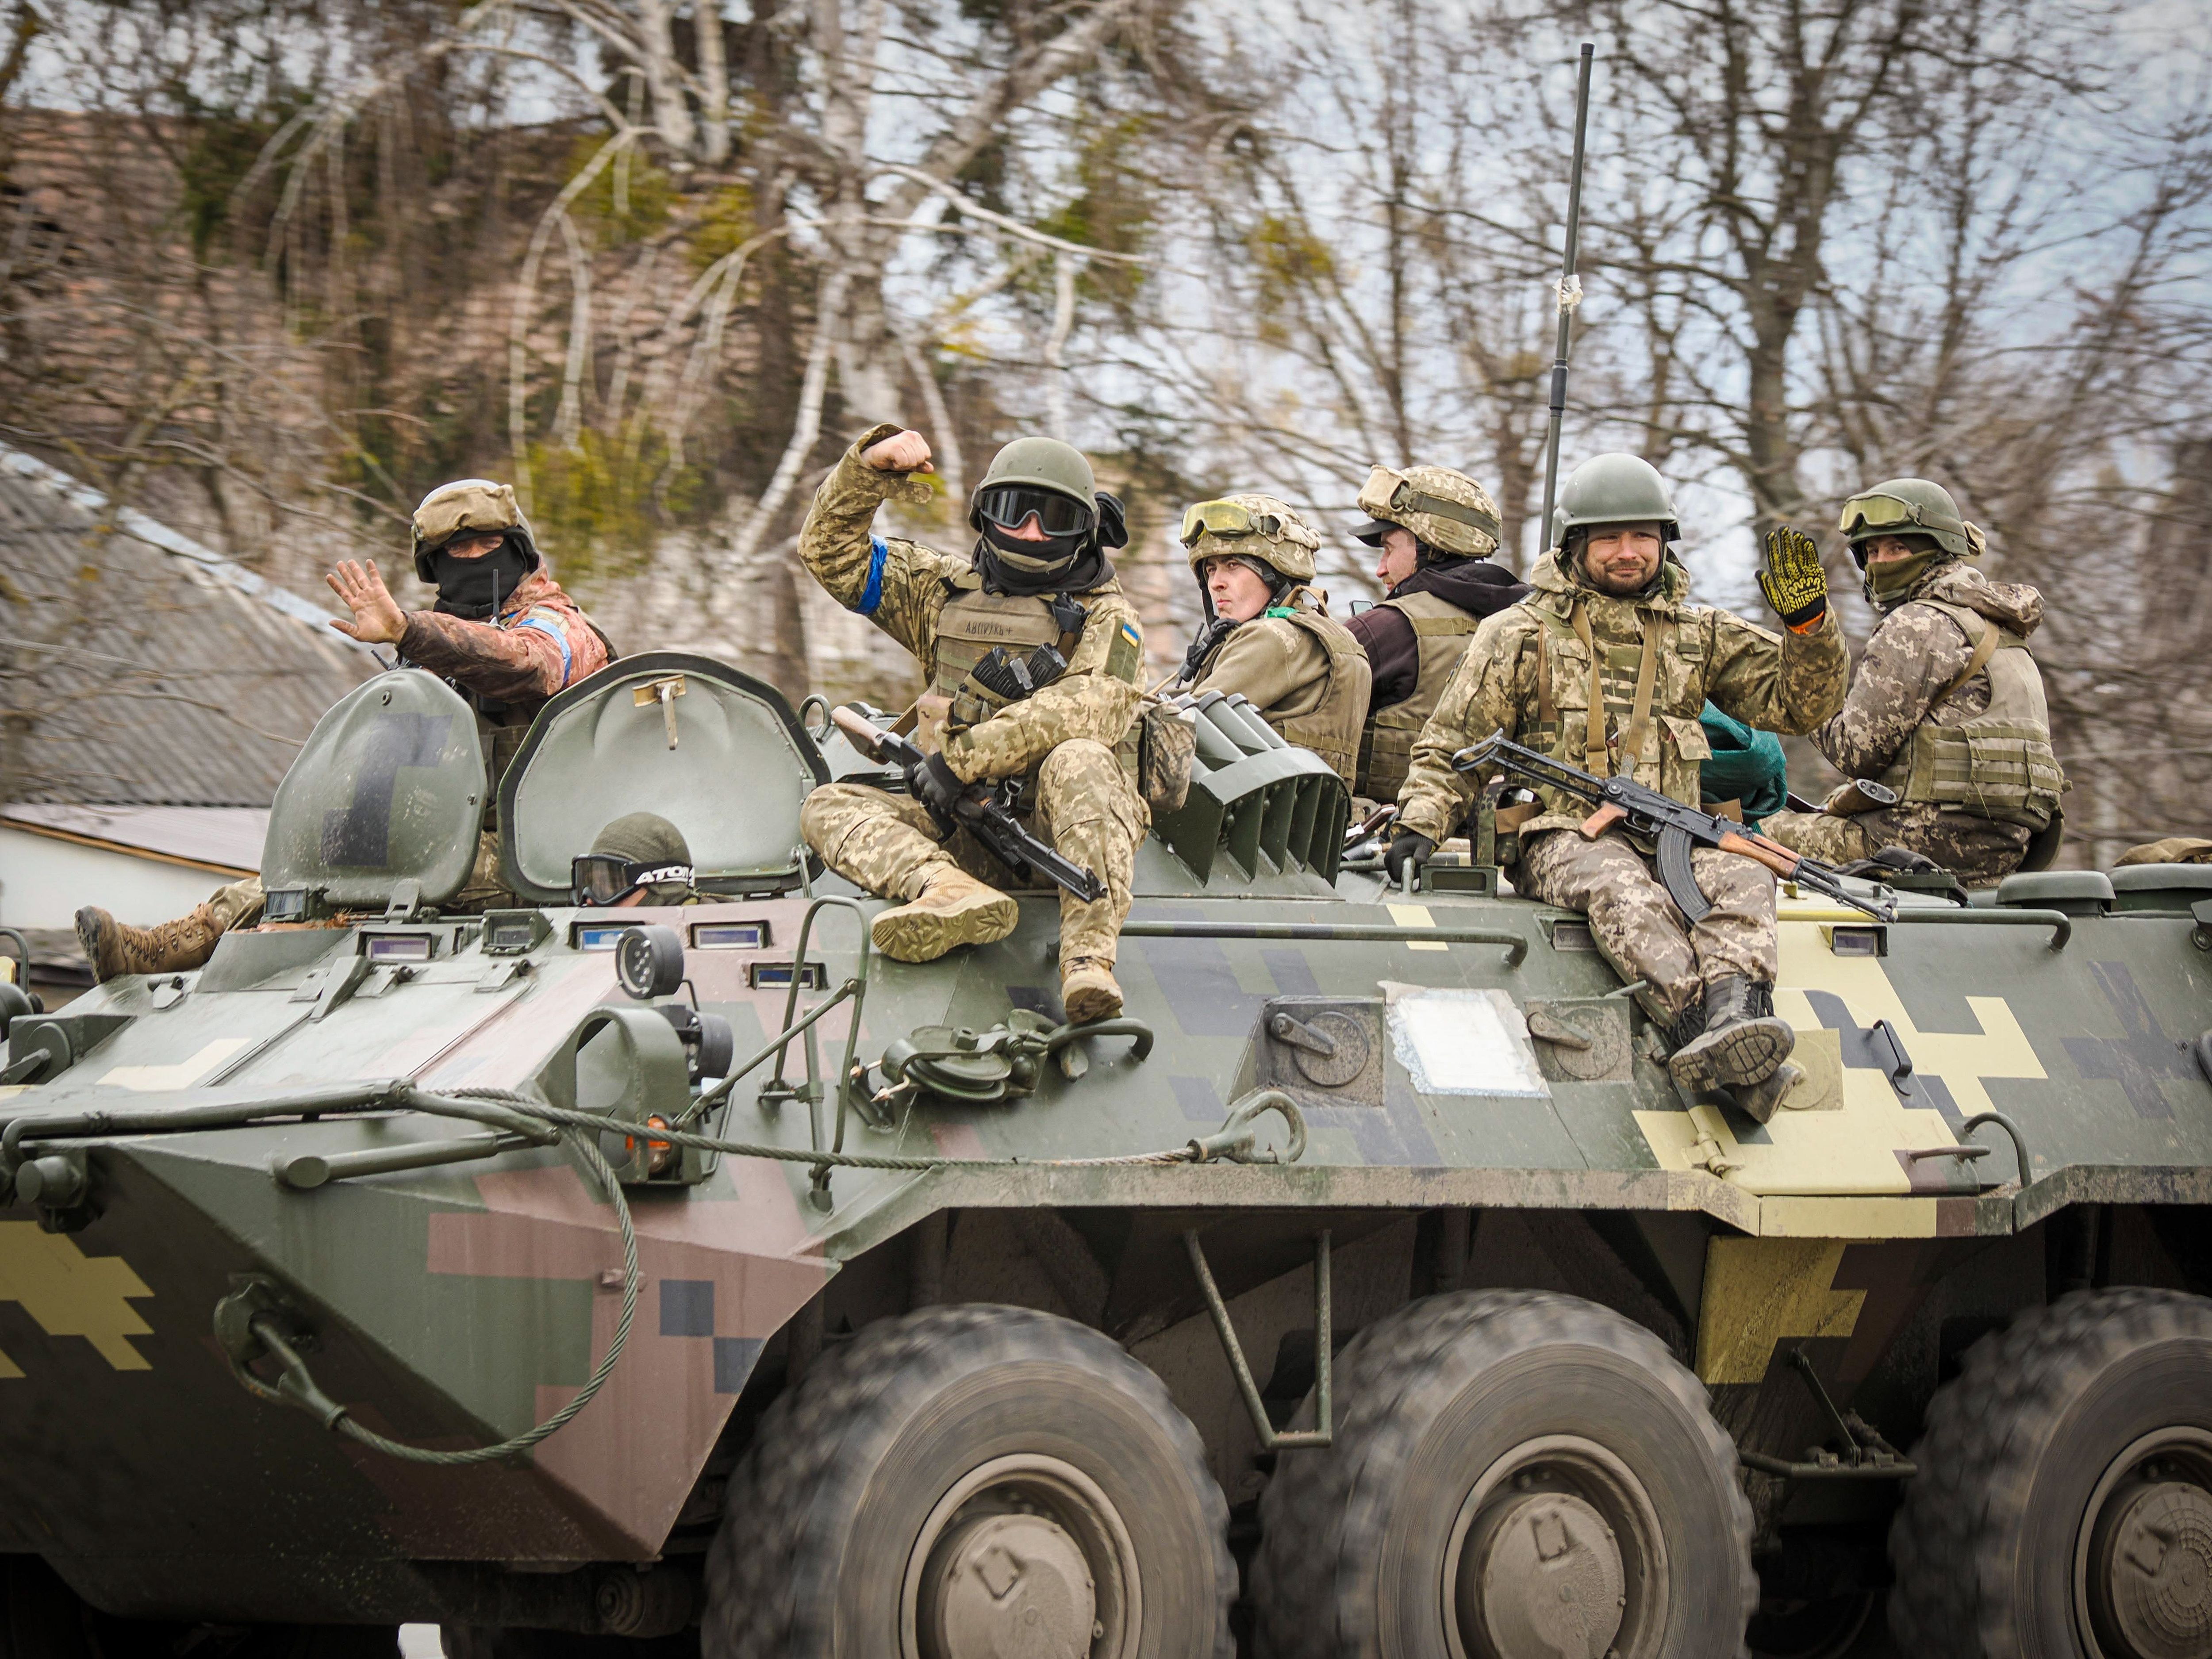 "Утечка" данных произошла накануне украинского контрнаступления